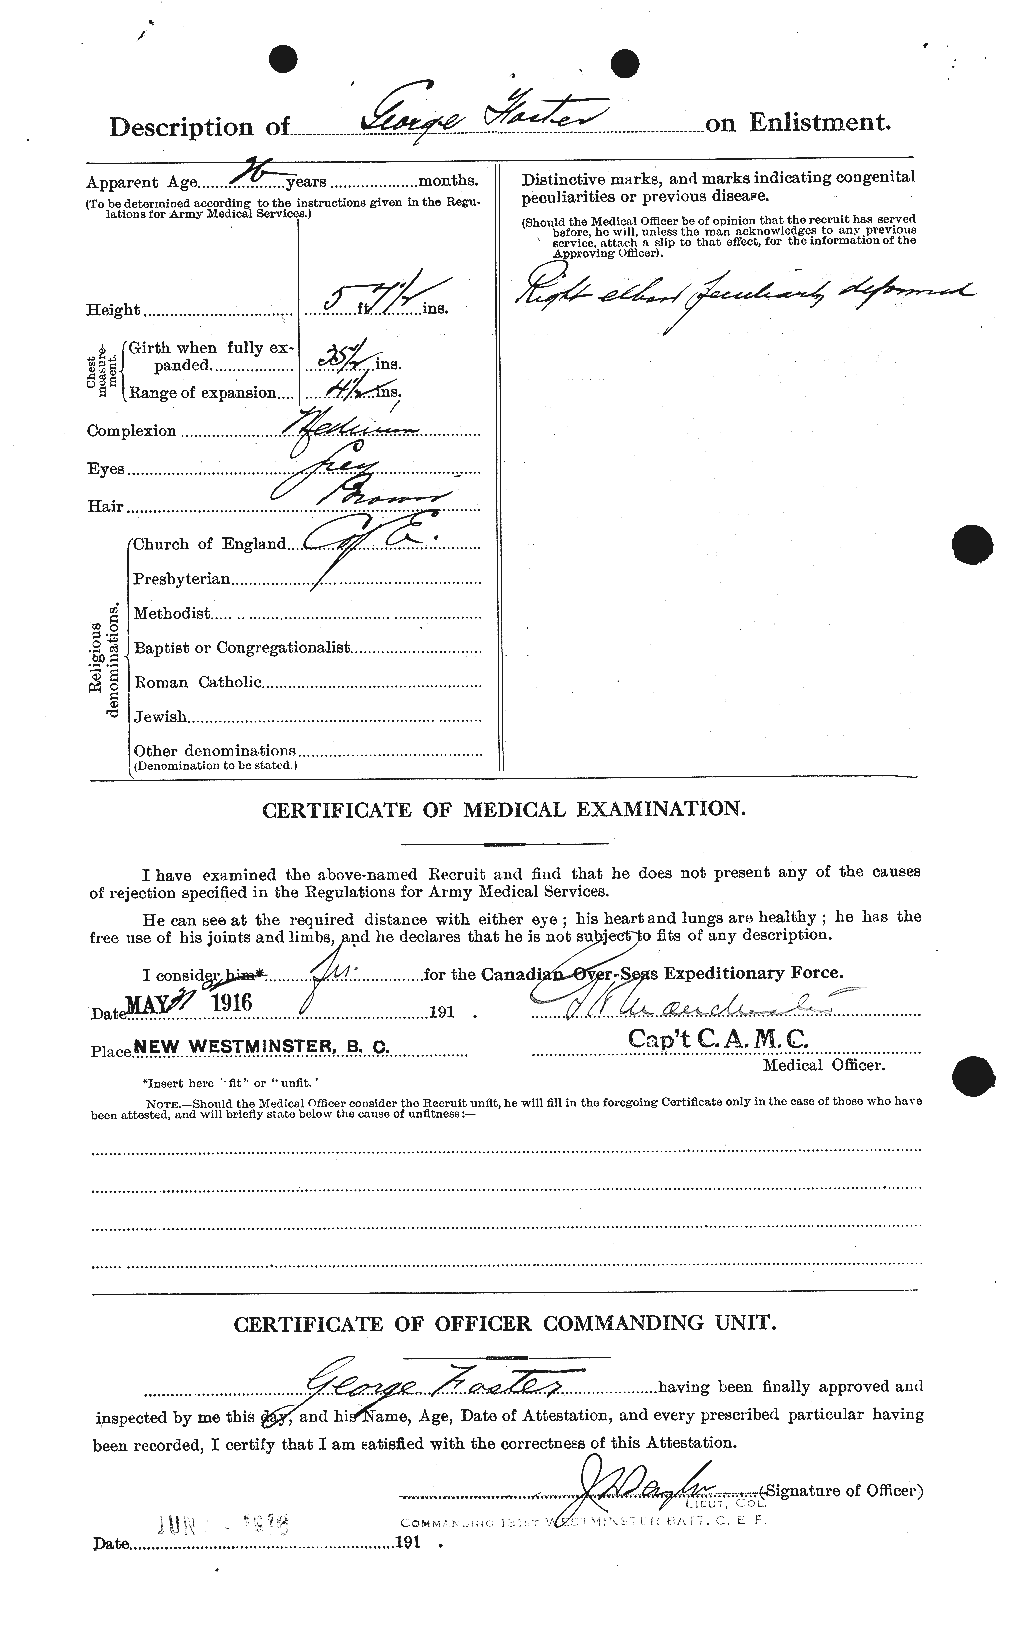 Dossiers du Personnel de la Première Guerre mondiale - CEC 330666b